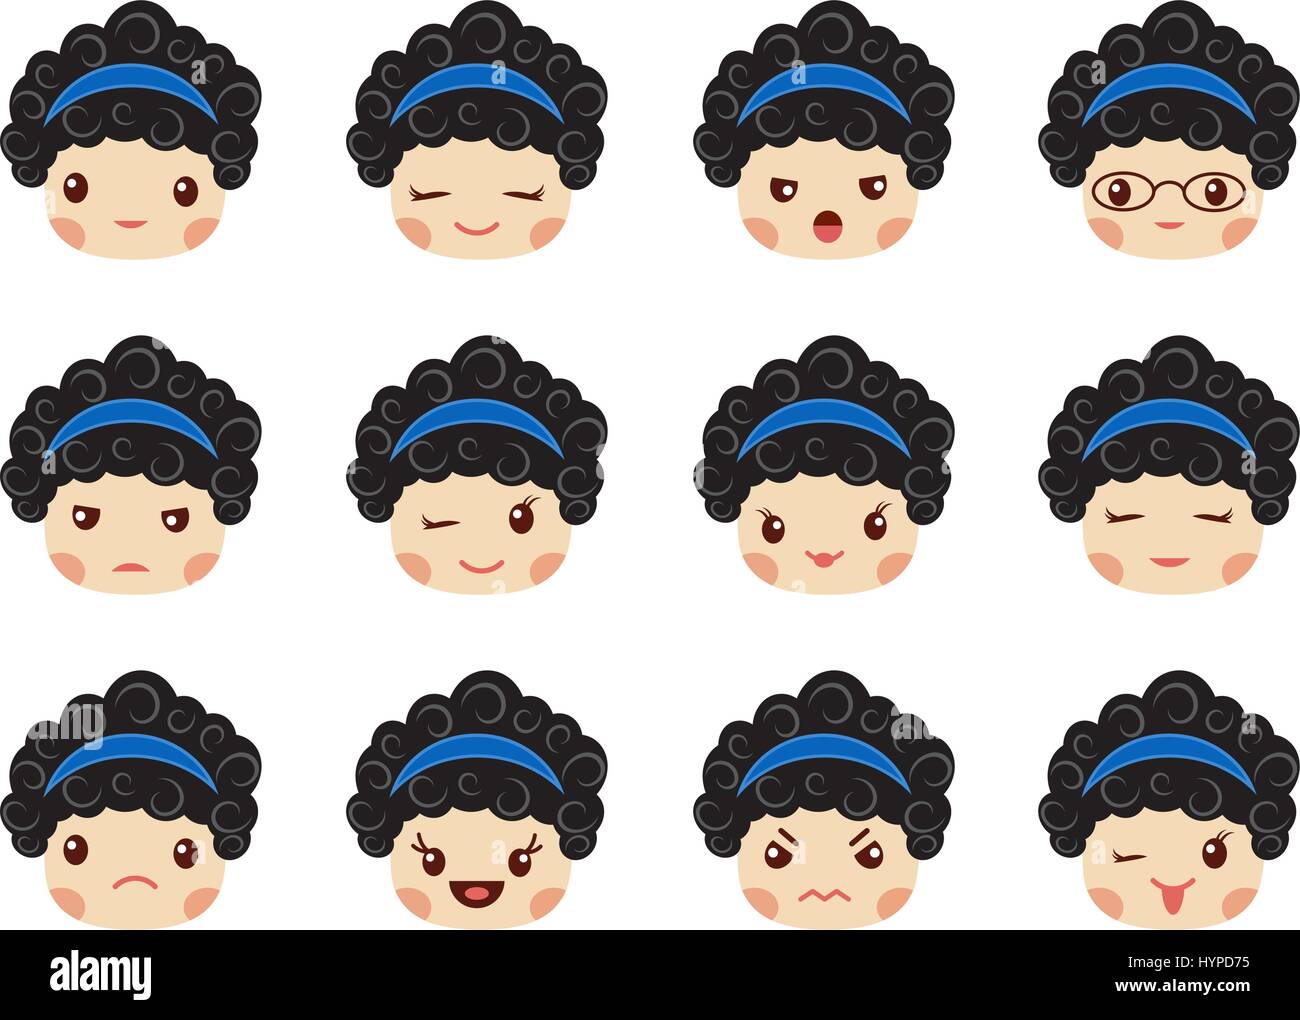 Emoji-Reihe von Mädchen, Avatar-Sammlung Stock Vektor